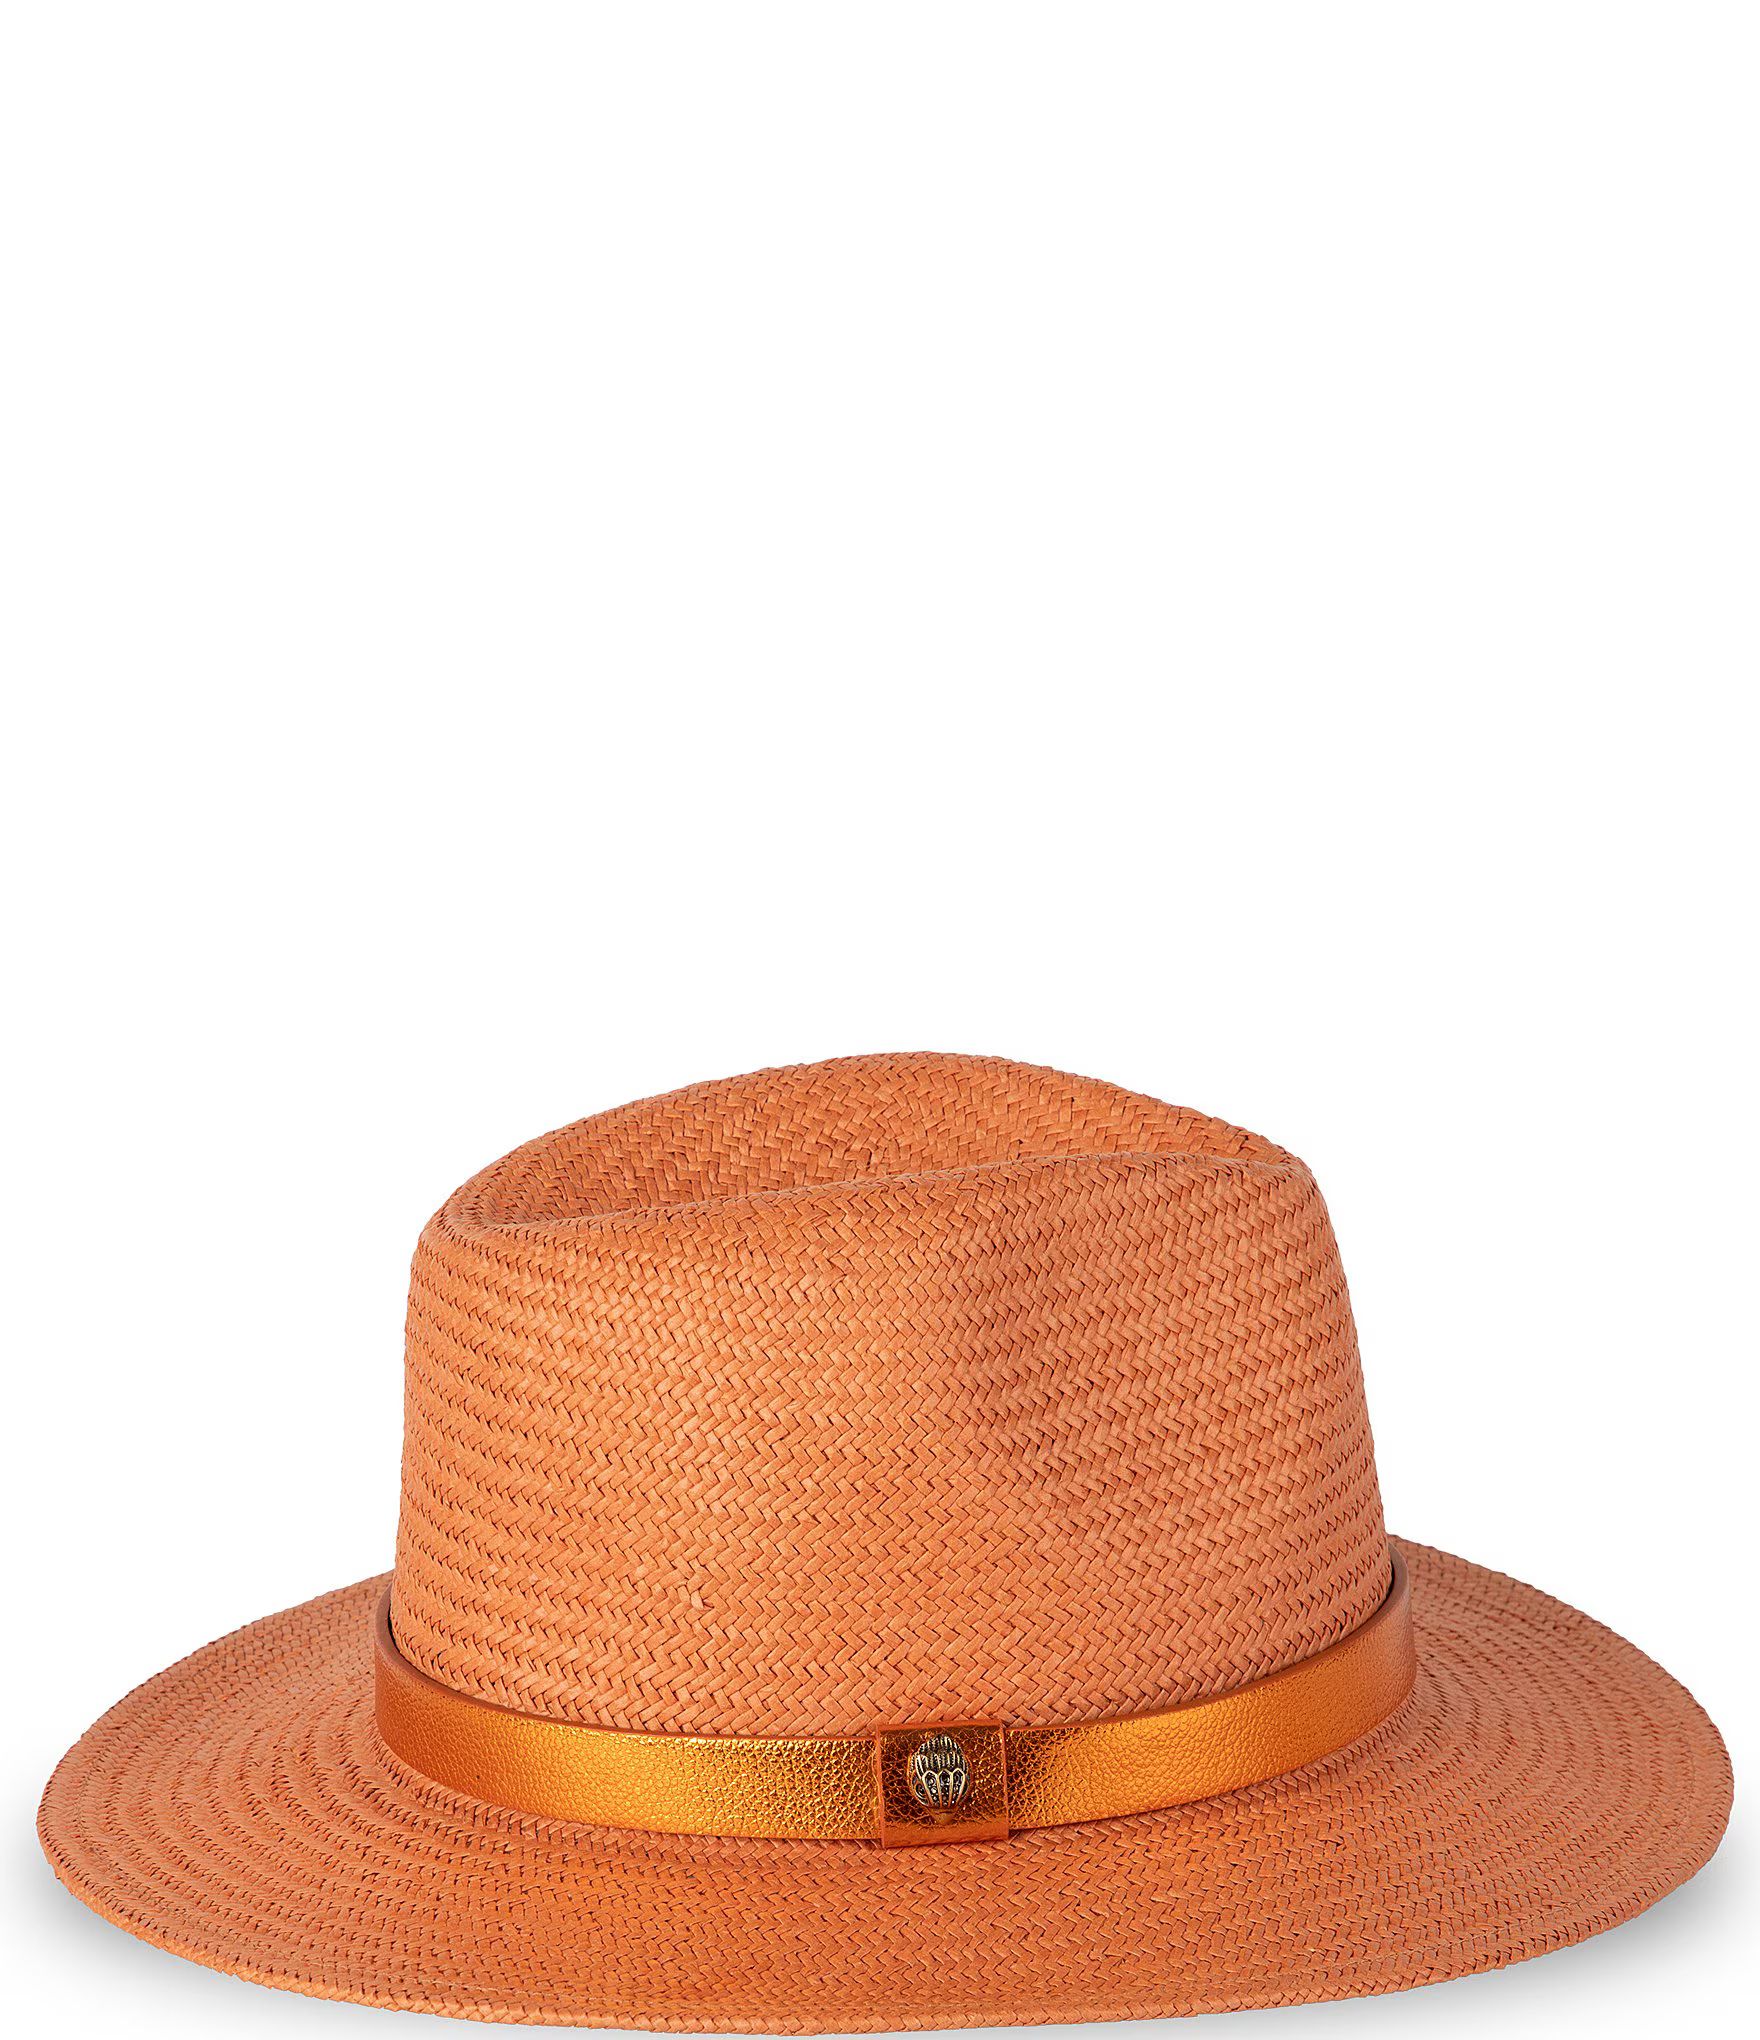 Kurt Geiger London Drenched Straw Fedora Hat | Dillard's | Dillard's